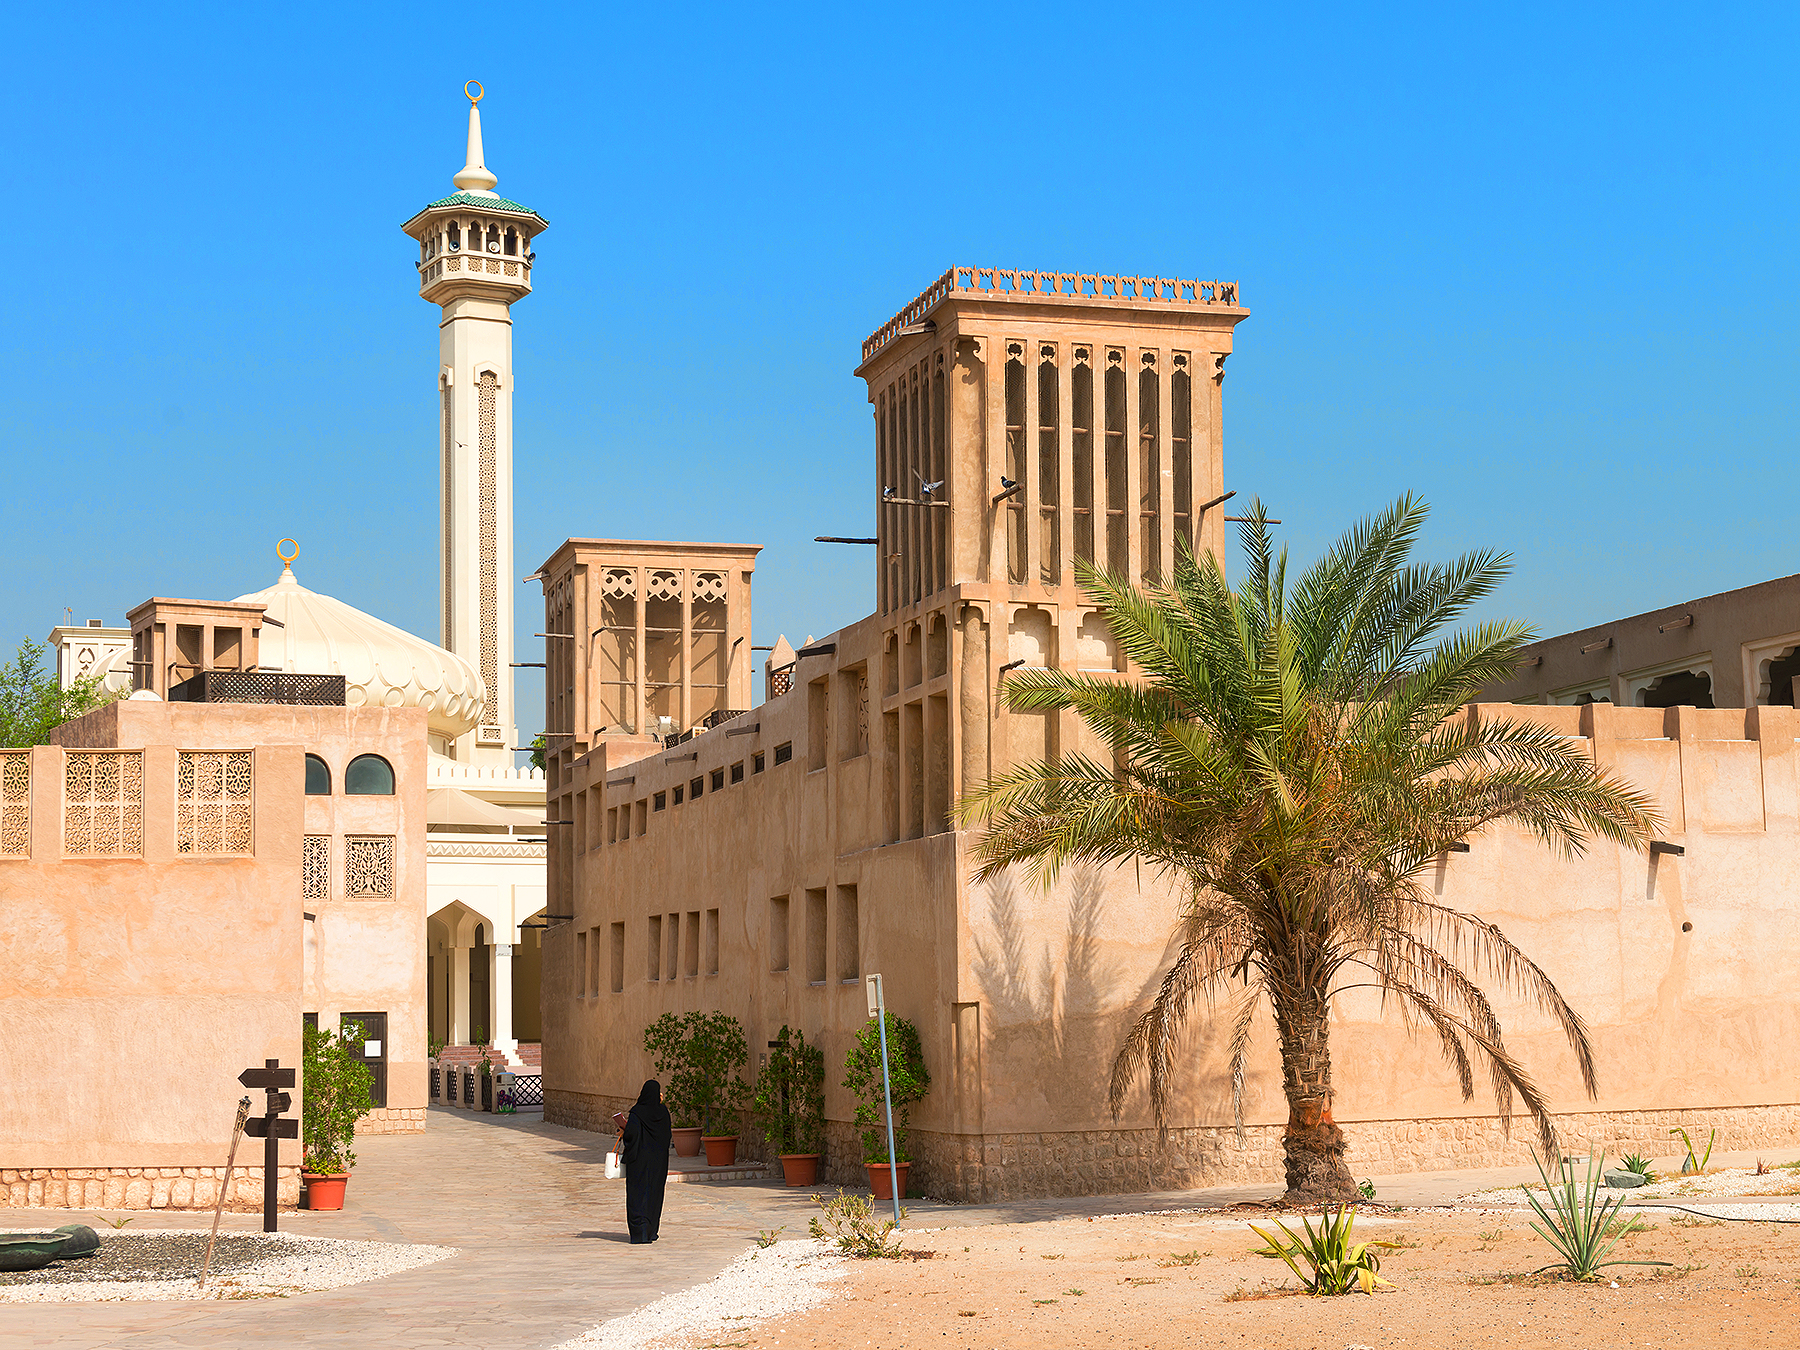 Làng Di sản Abu Dhabi - Heritage Village - Abu Dhabi - Các Tiểu Vương Quốc Ả Rập Thống Nhất